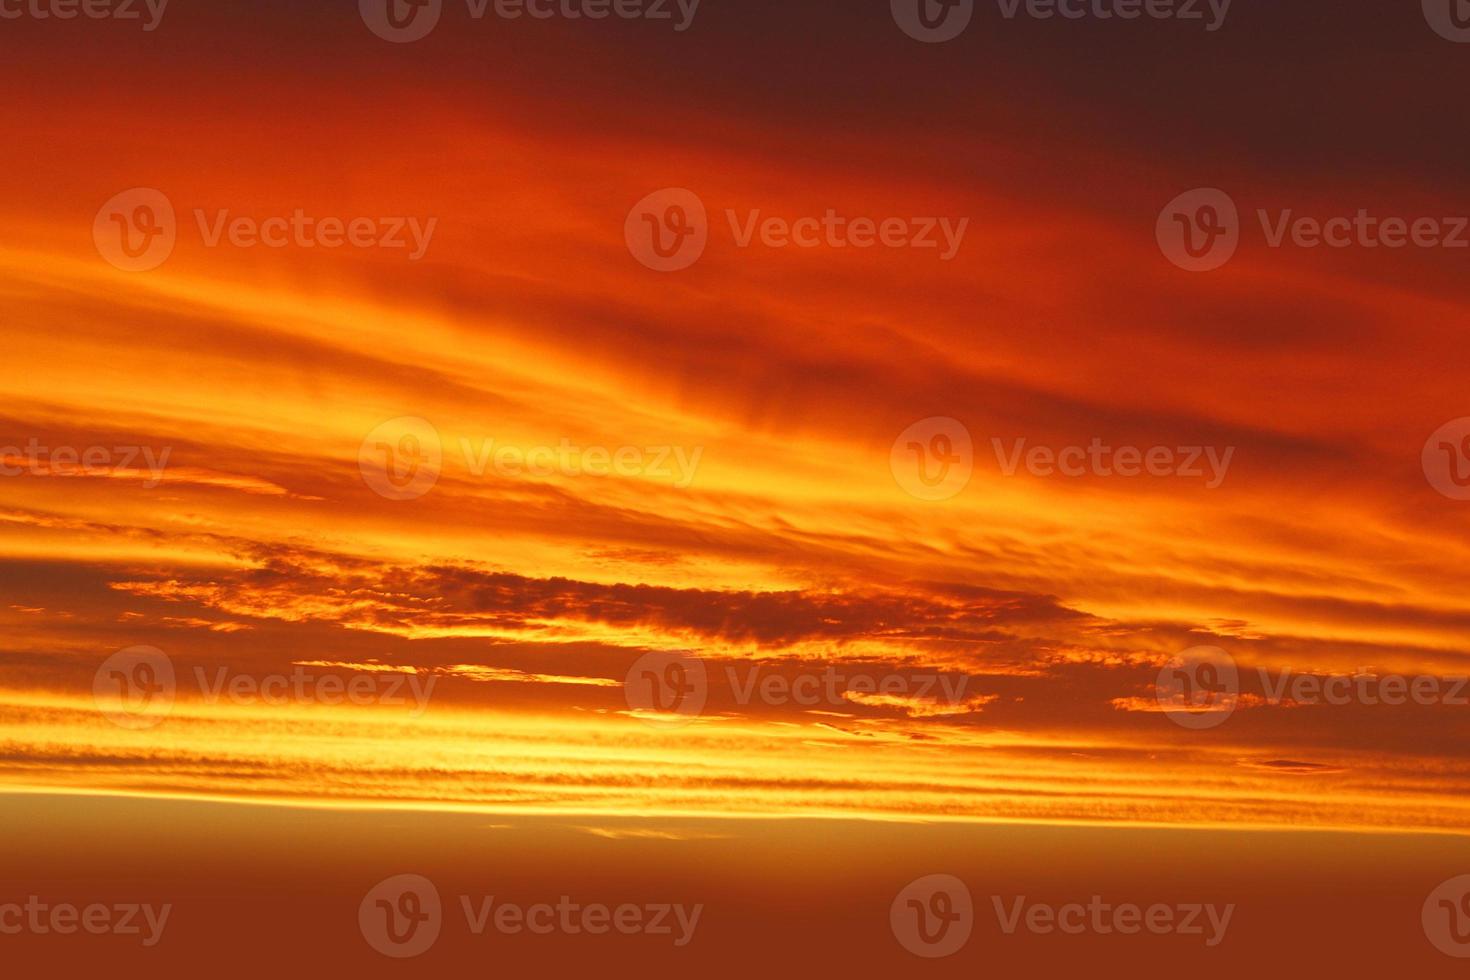 tramonto cielo arancione panorama stupendo tramonto naturale cielo drammatico luminoso foto